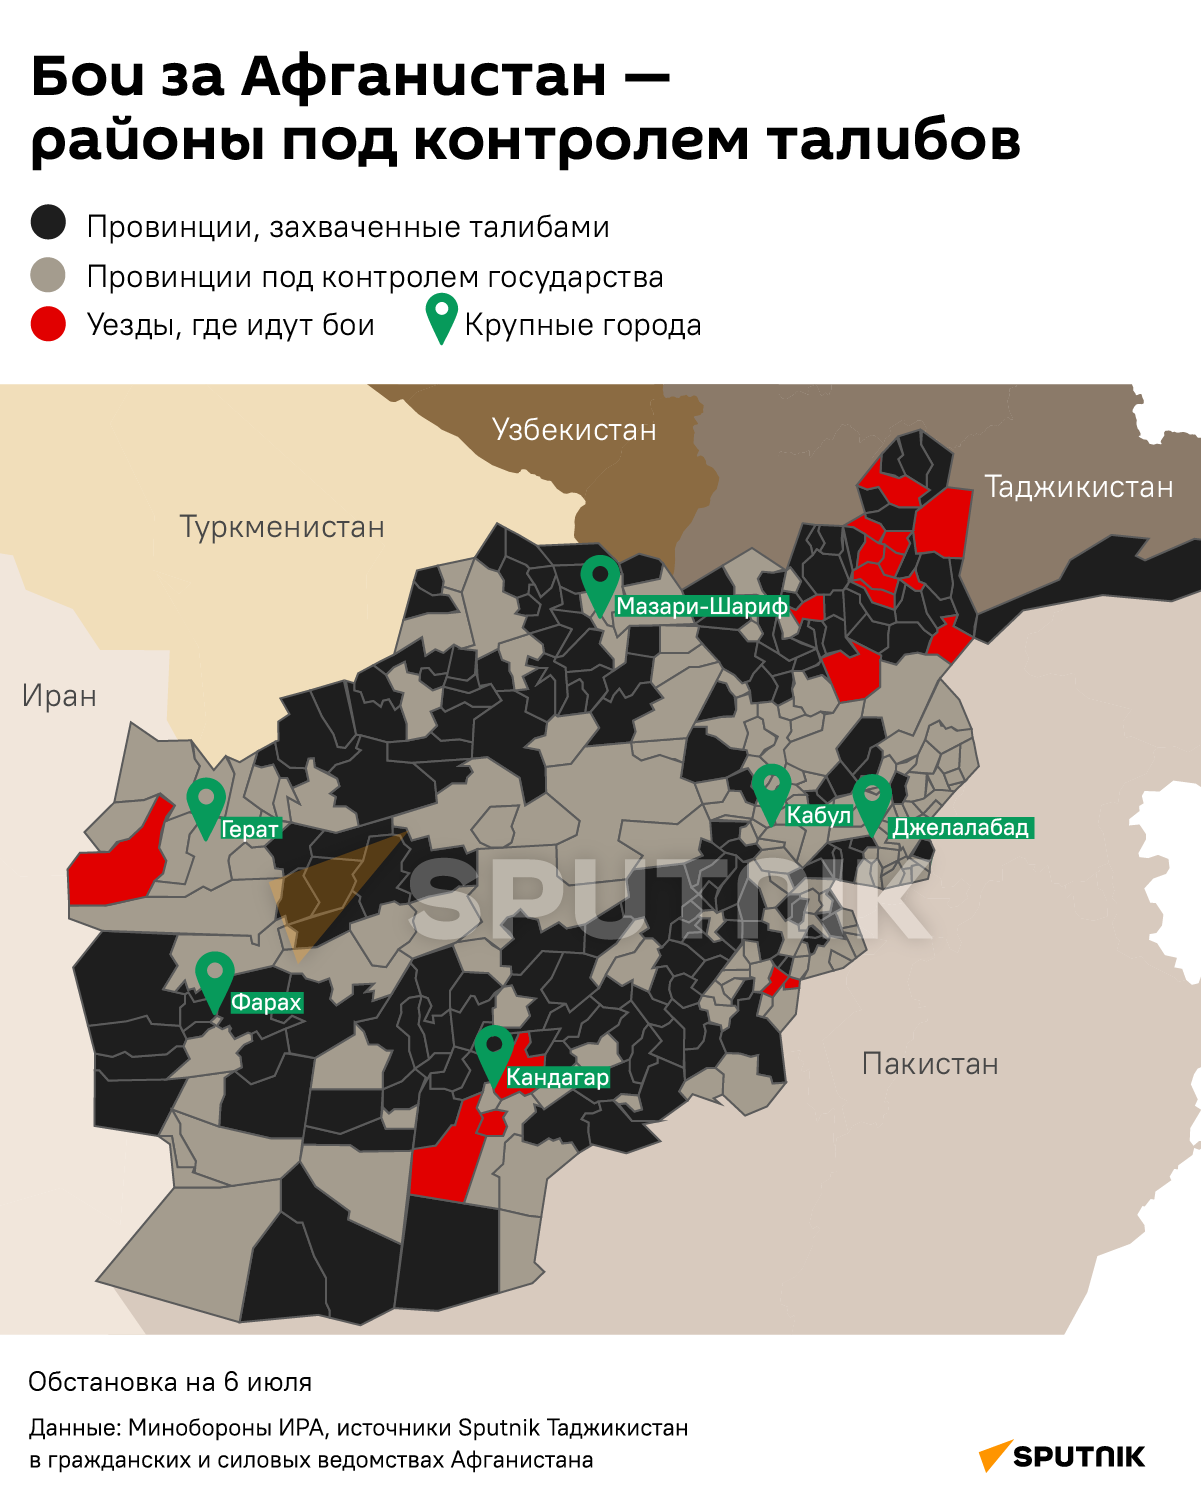 Бои за Афганистан — районы под контролем талибов - Sputnik Таджикистан